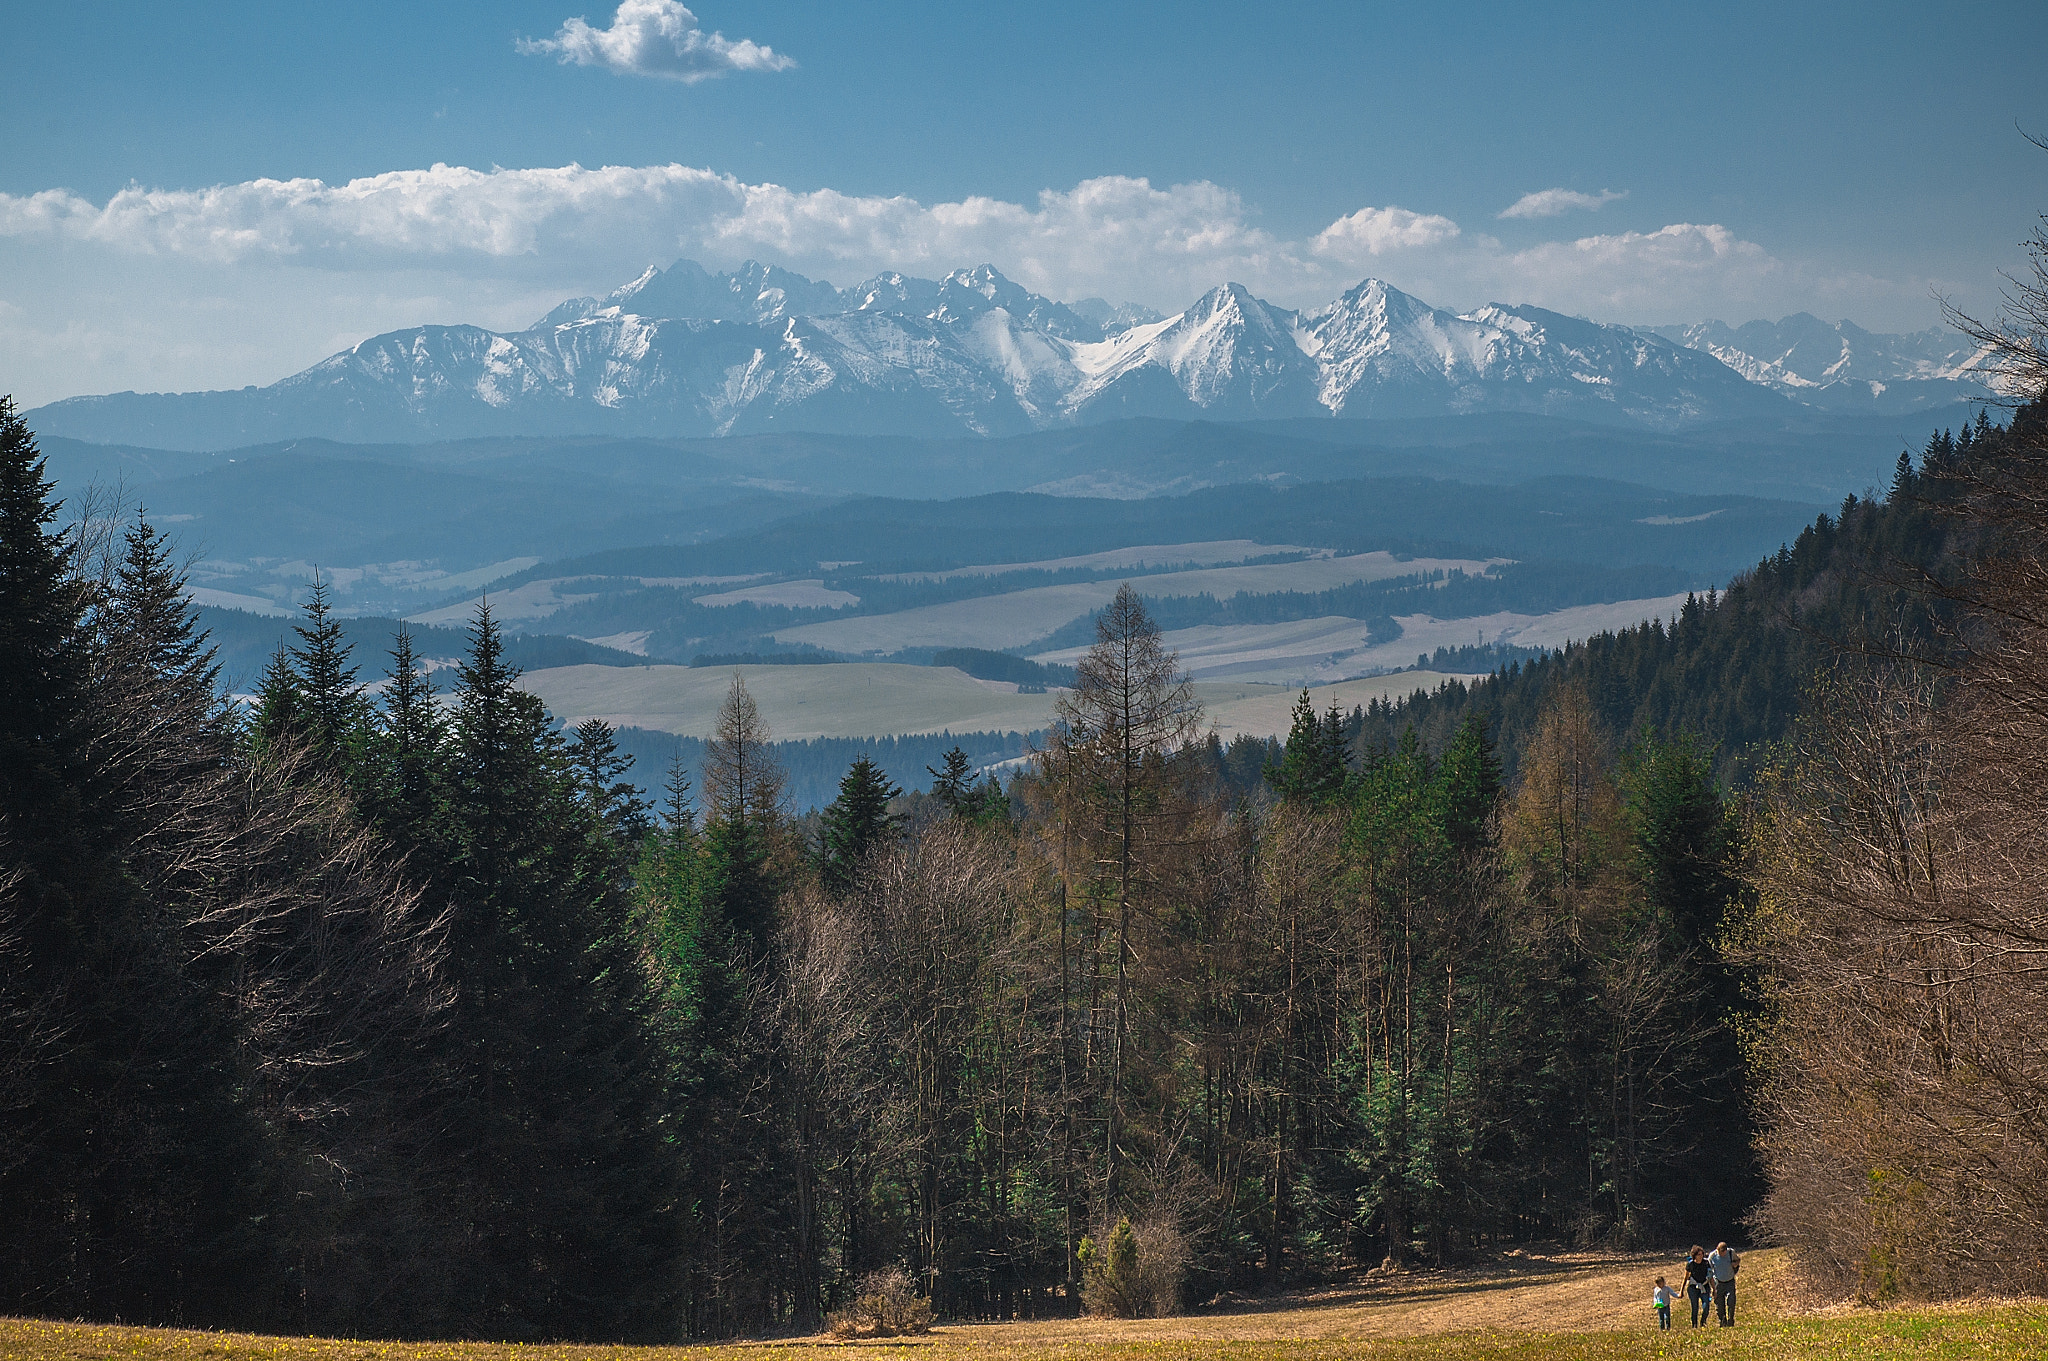 Sony SLT-A57 sample photo. The tatra mountains seen from pieniny photography